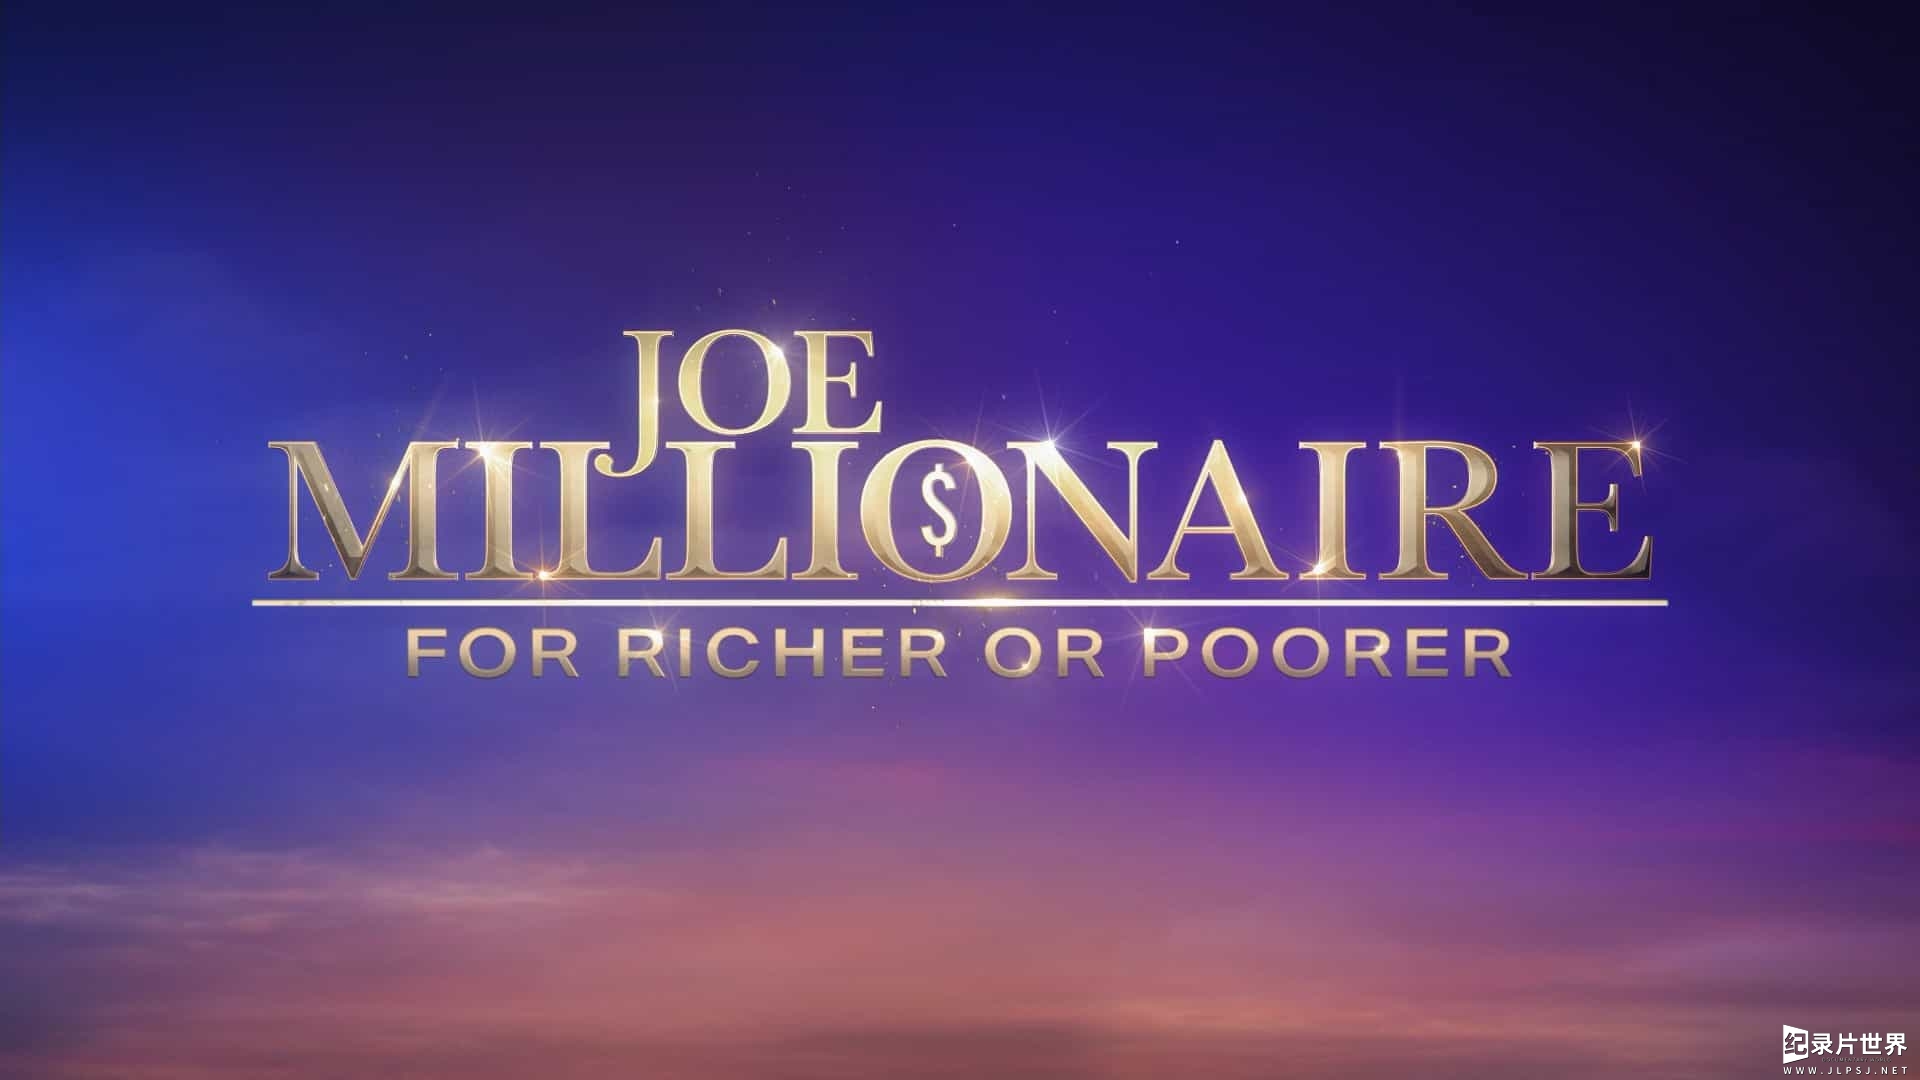 真人秀纪录片《‎乔·百万富翁：富人或穷人 Joe Millionaire: For Richer or Poorer 》‎ 第一季 全10集